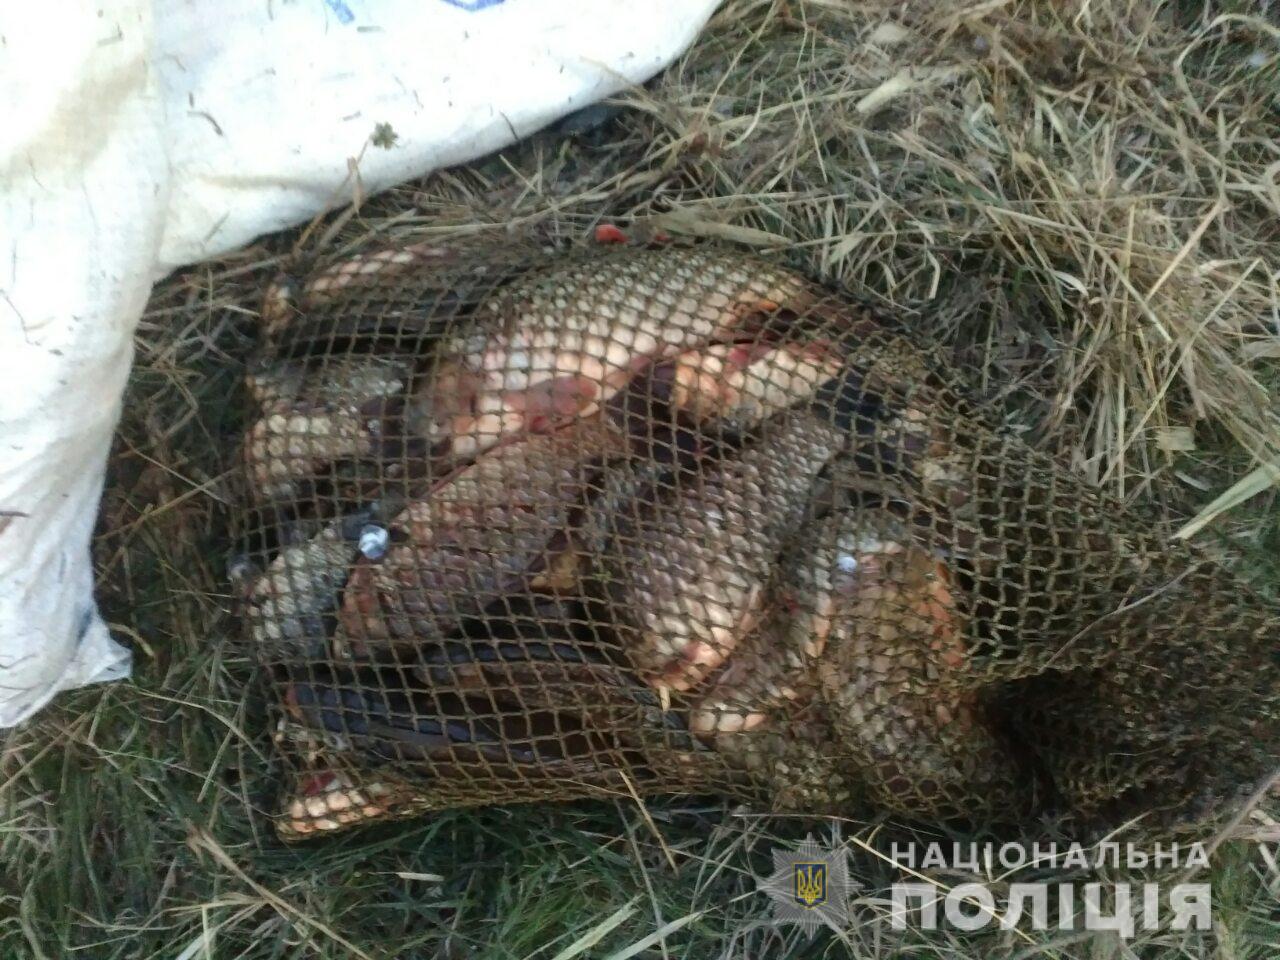 Рыбалка: на Харьковщине стало больше браконьеров